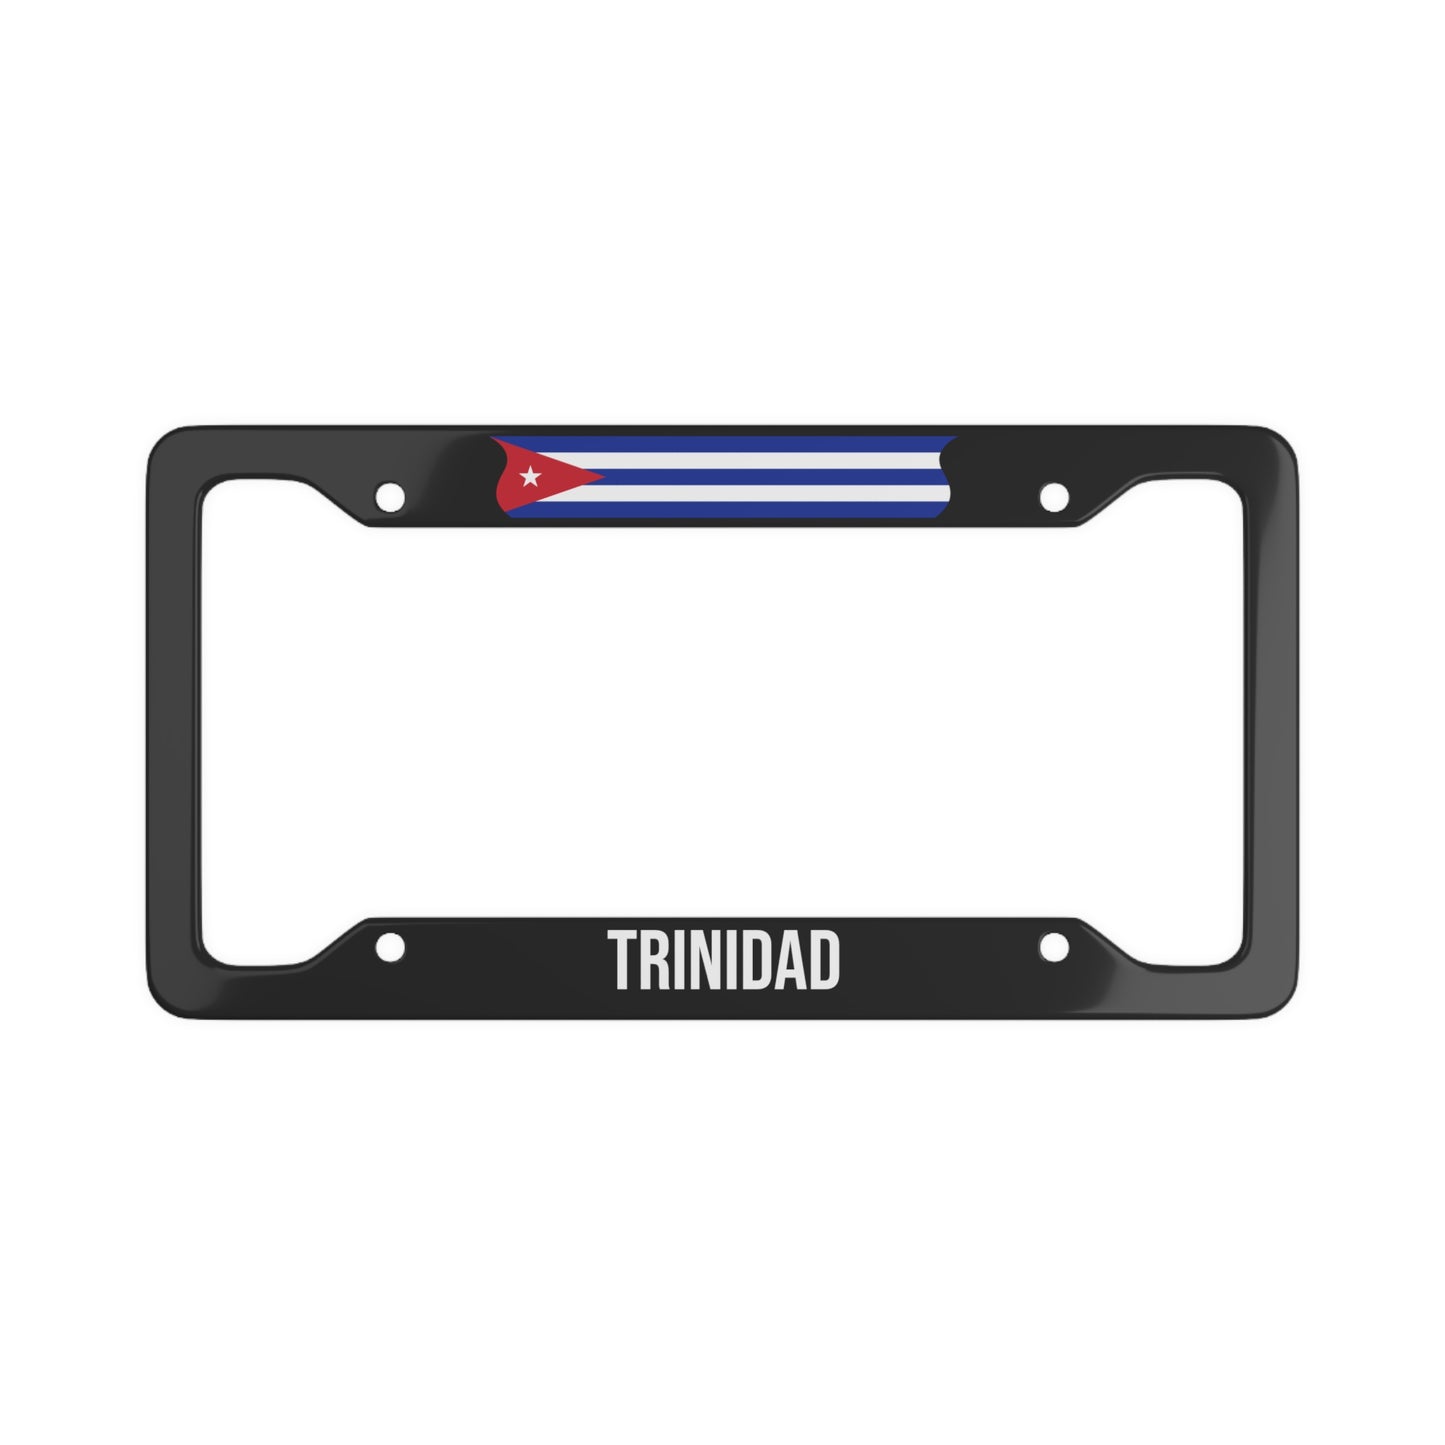 Trinidad, Cuba Car Plate Frame